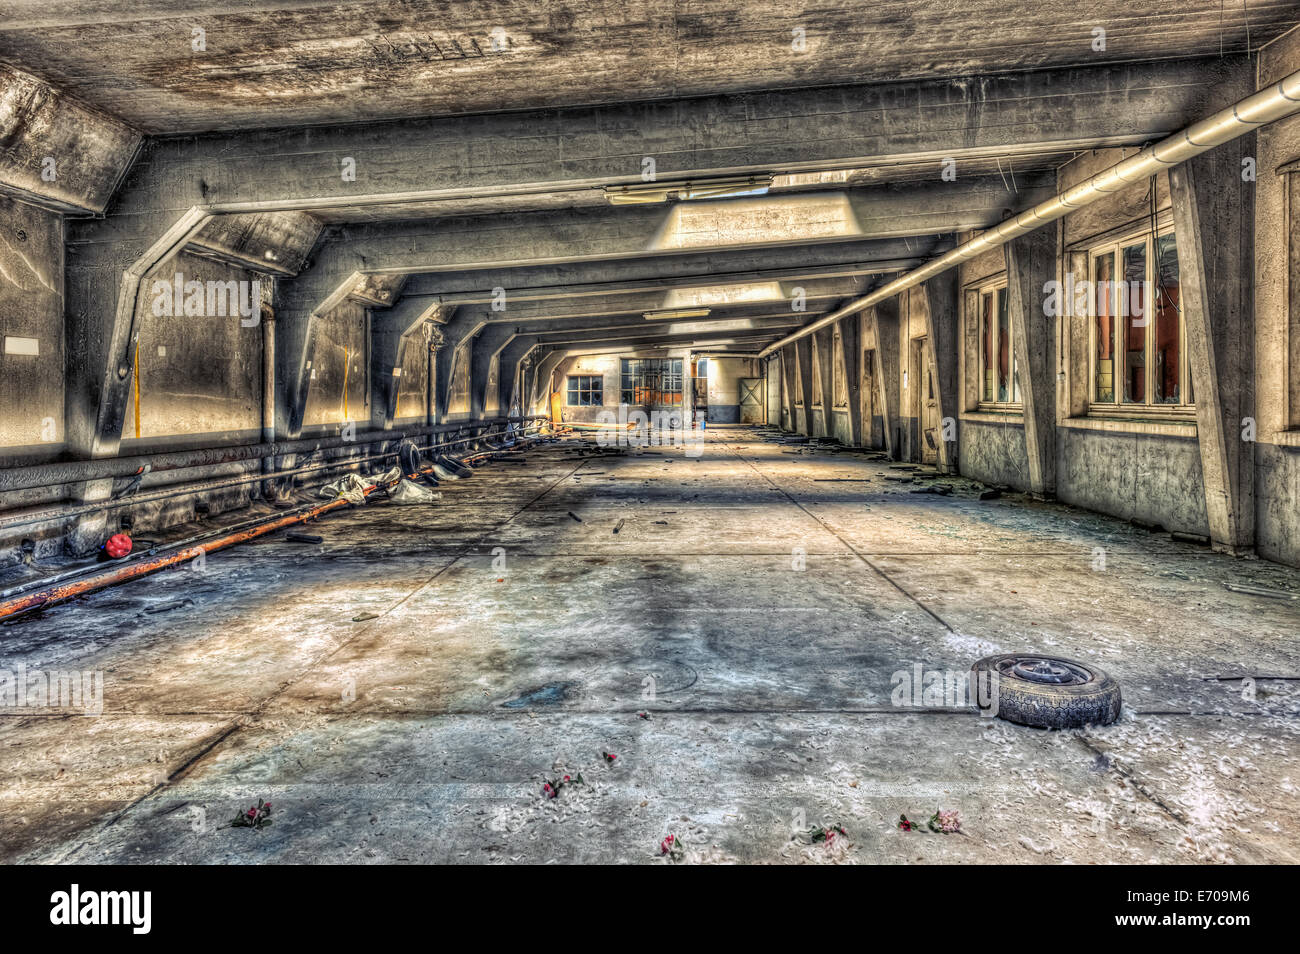 Abandoned underground parking garage Stock Photo - Alamy